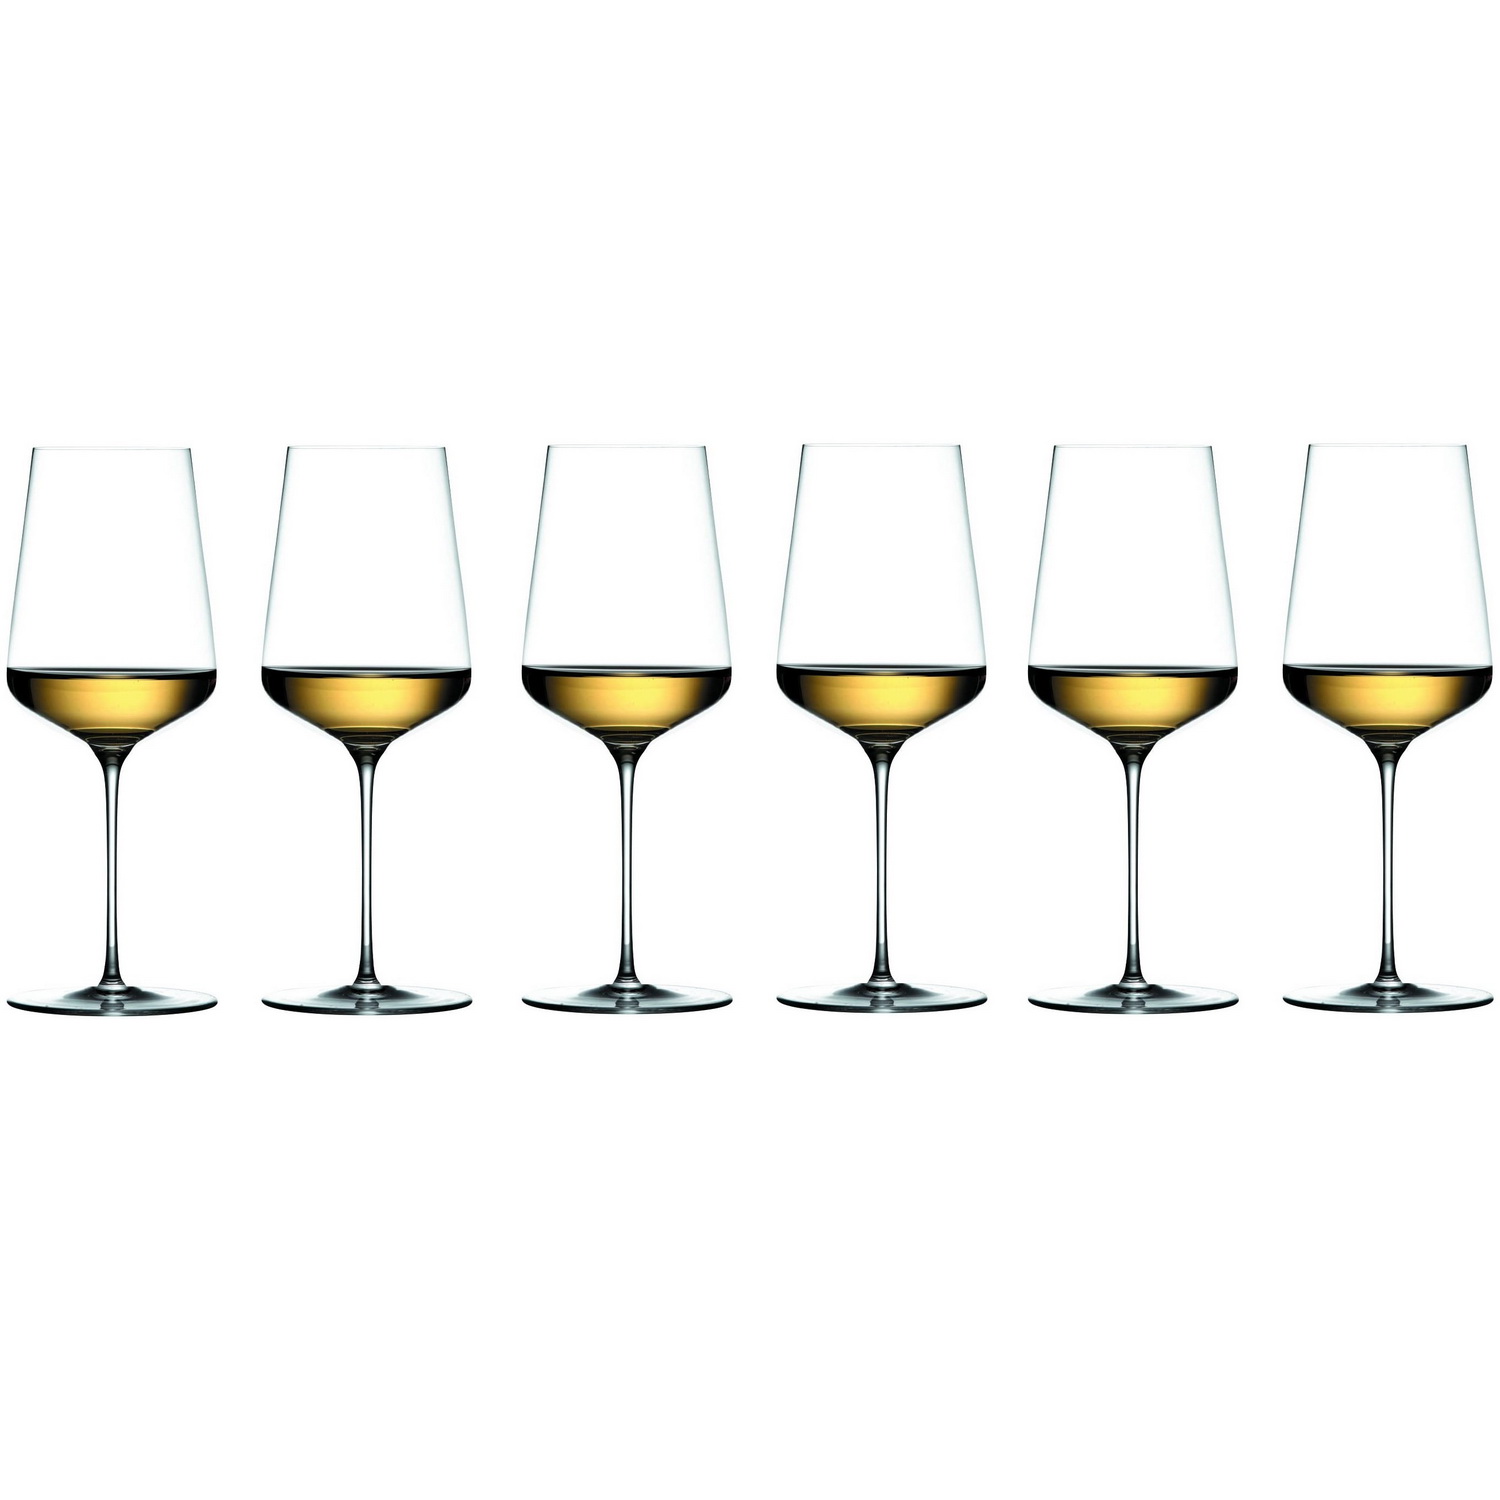 6 бокалов для вина Zalto Denk'Art Universal 555 мл (арт. 11300)